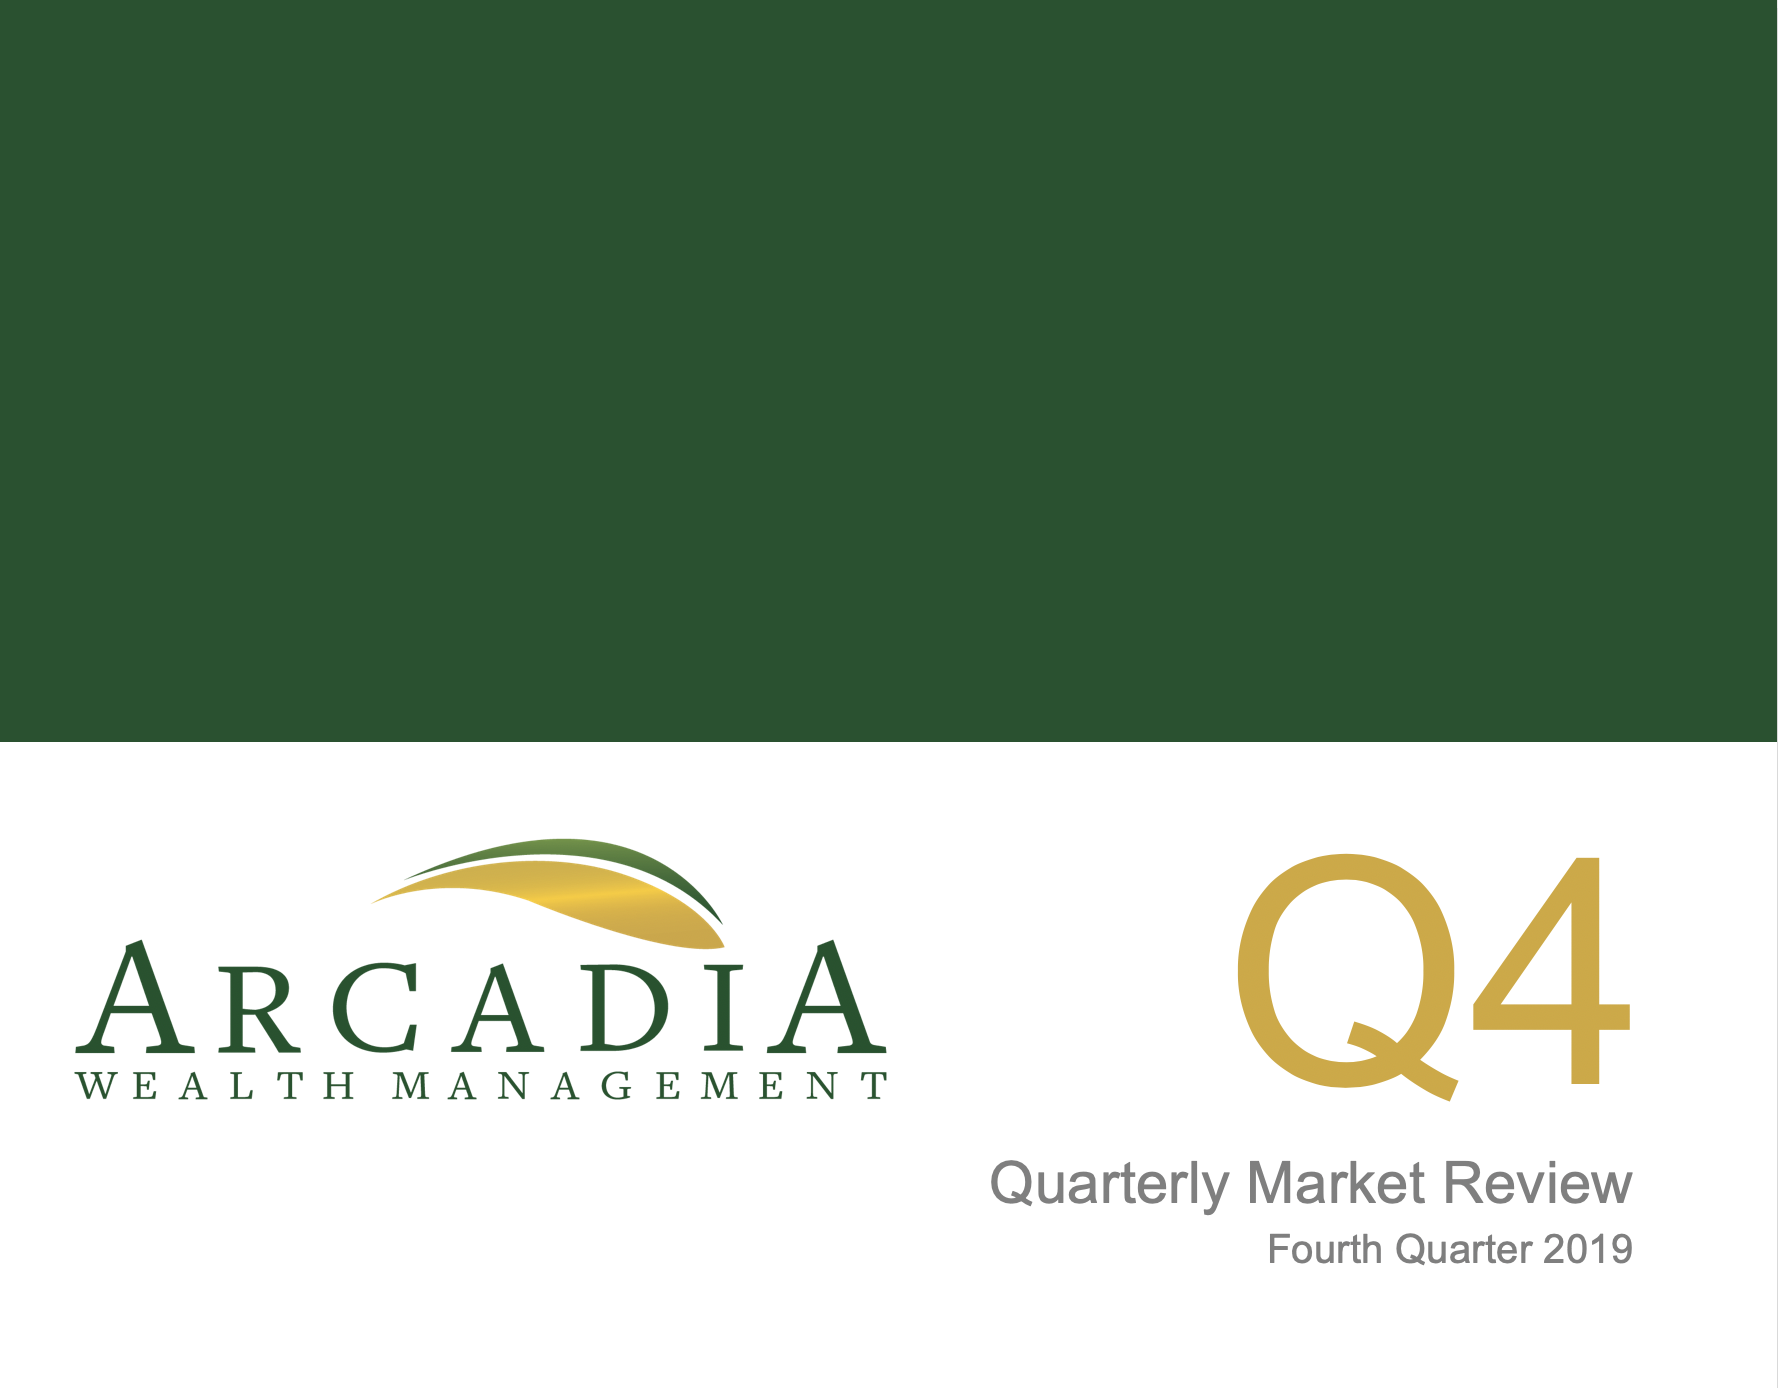 Fourth Quarter 2019 - Quarterly Market Review